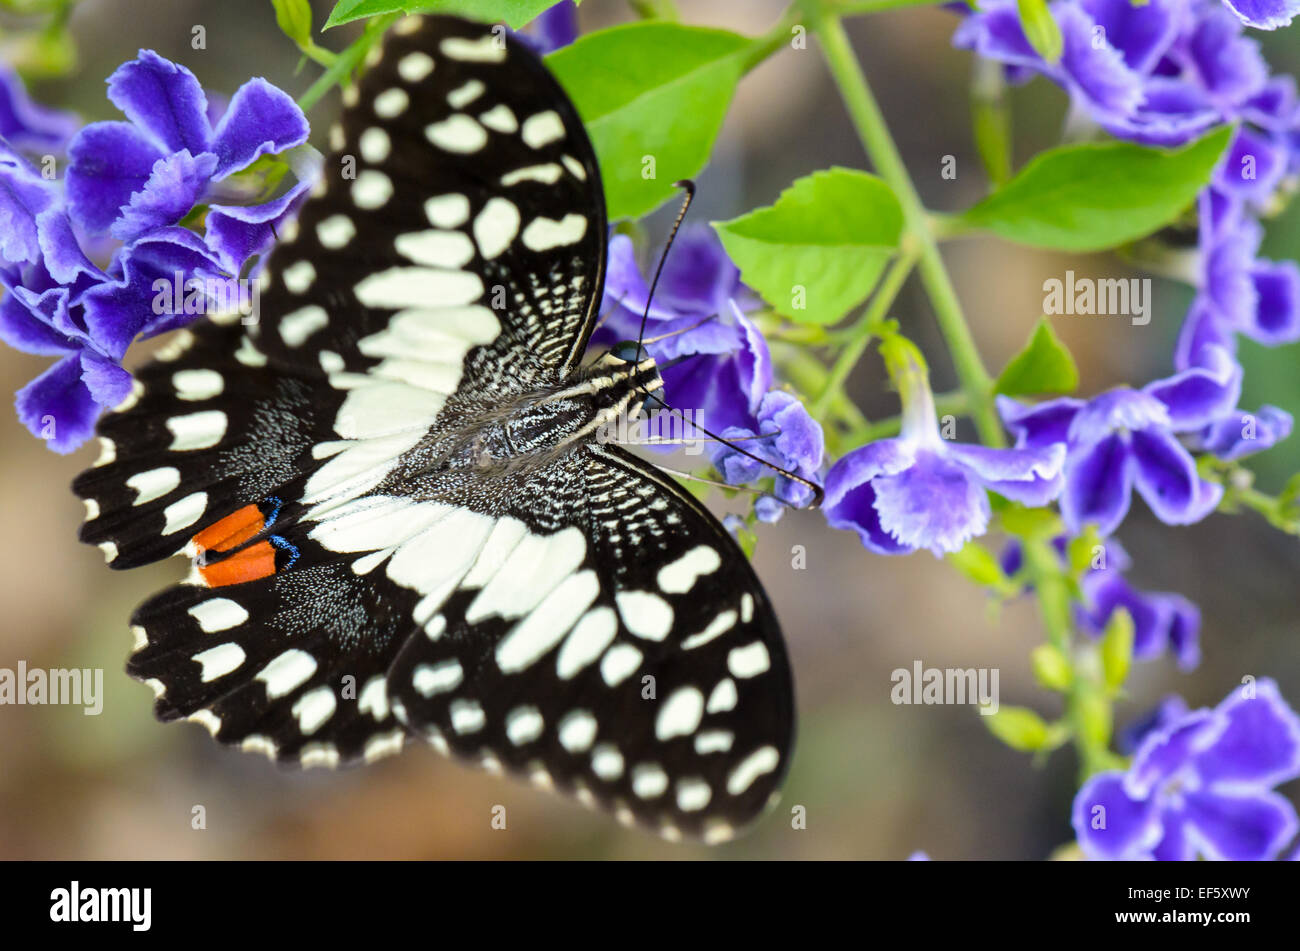 Schwarzen und weißen Flecken von Papilio Demoleus oder Kalk Schmetterling Nektar auf blaue Blume Essen Nahaufnahme Stockfoto